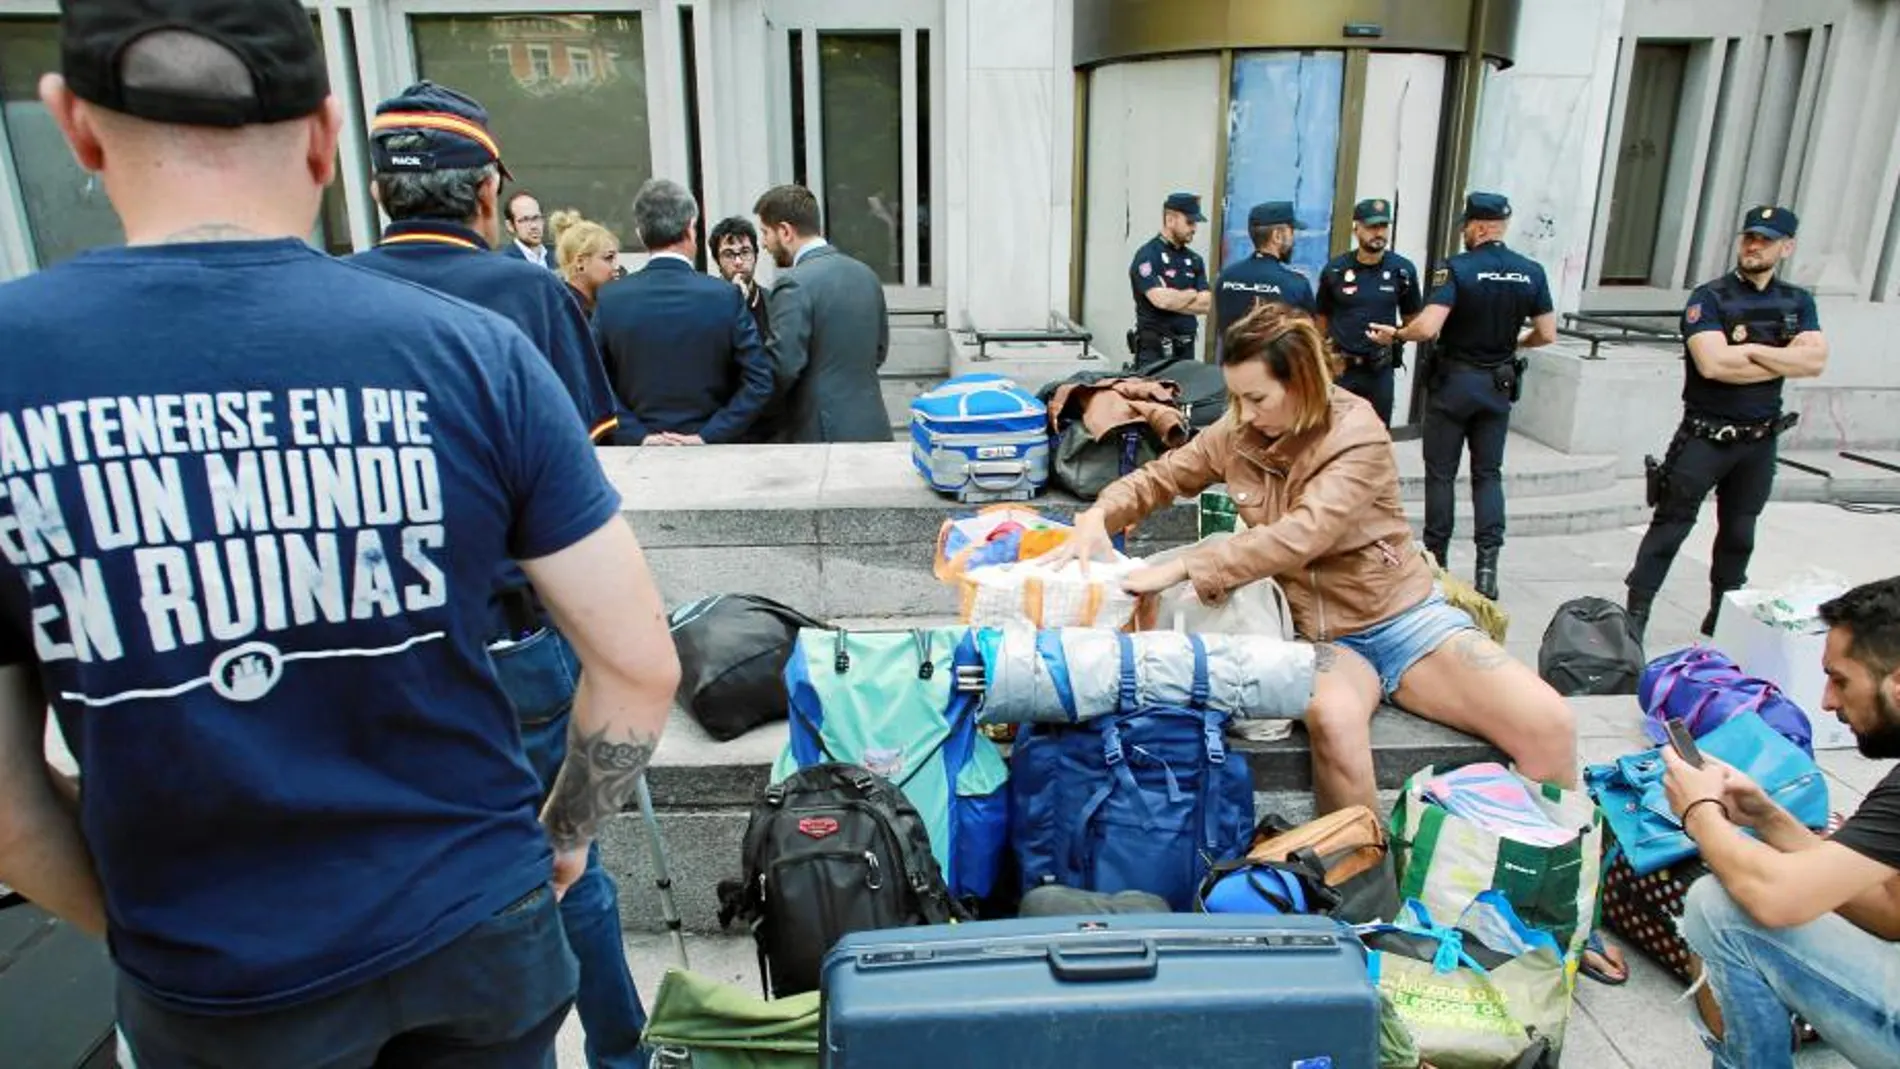 La portavoz de Hogar Social Madrid, Melisa Ruiz, organizó tras el desalojo una sentada en Cibeles «hasta que el Ayuntamiento y Carmena les ofrezcan una alternativa habitacional»